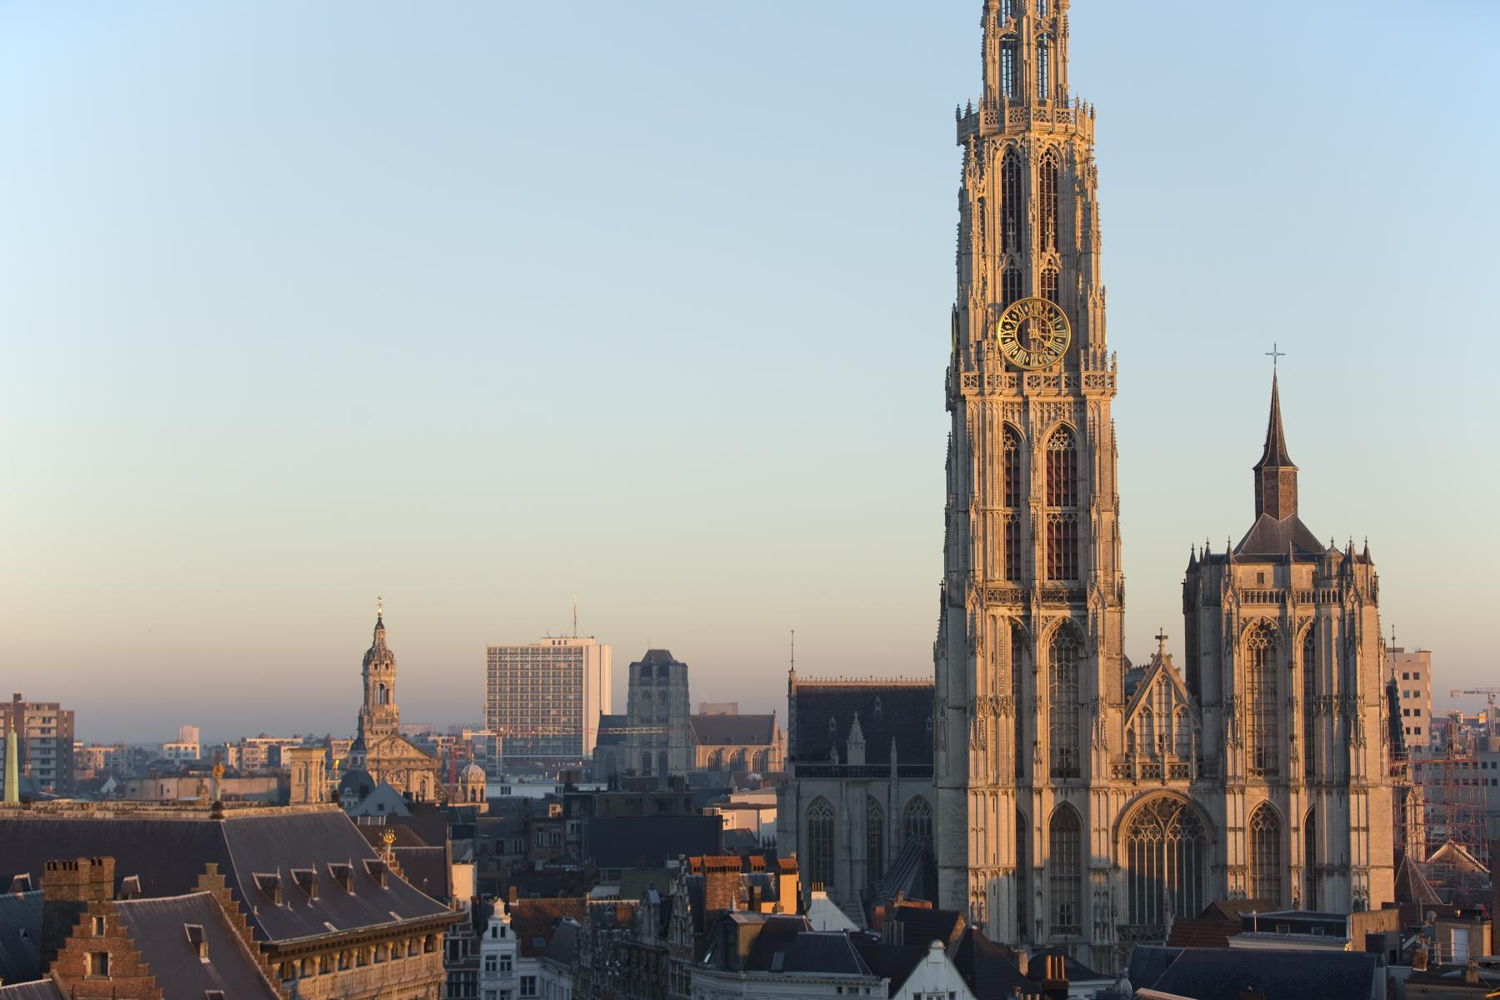 O.L.V. Kathedraal Antwerpen - Onderwijs en/in de kathedraal